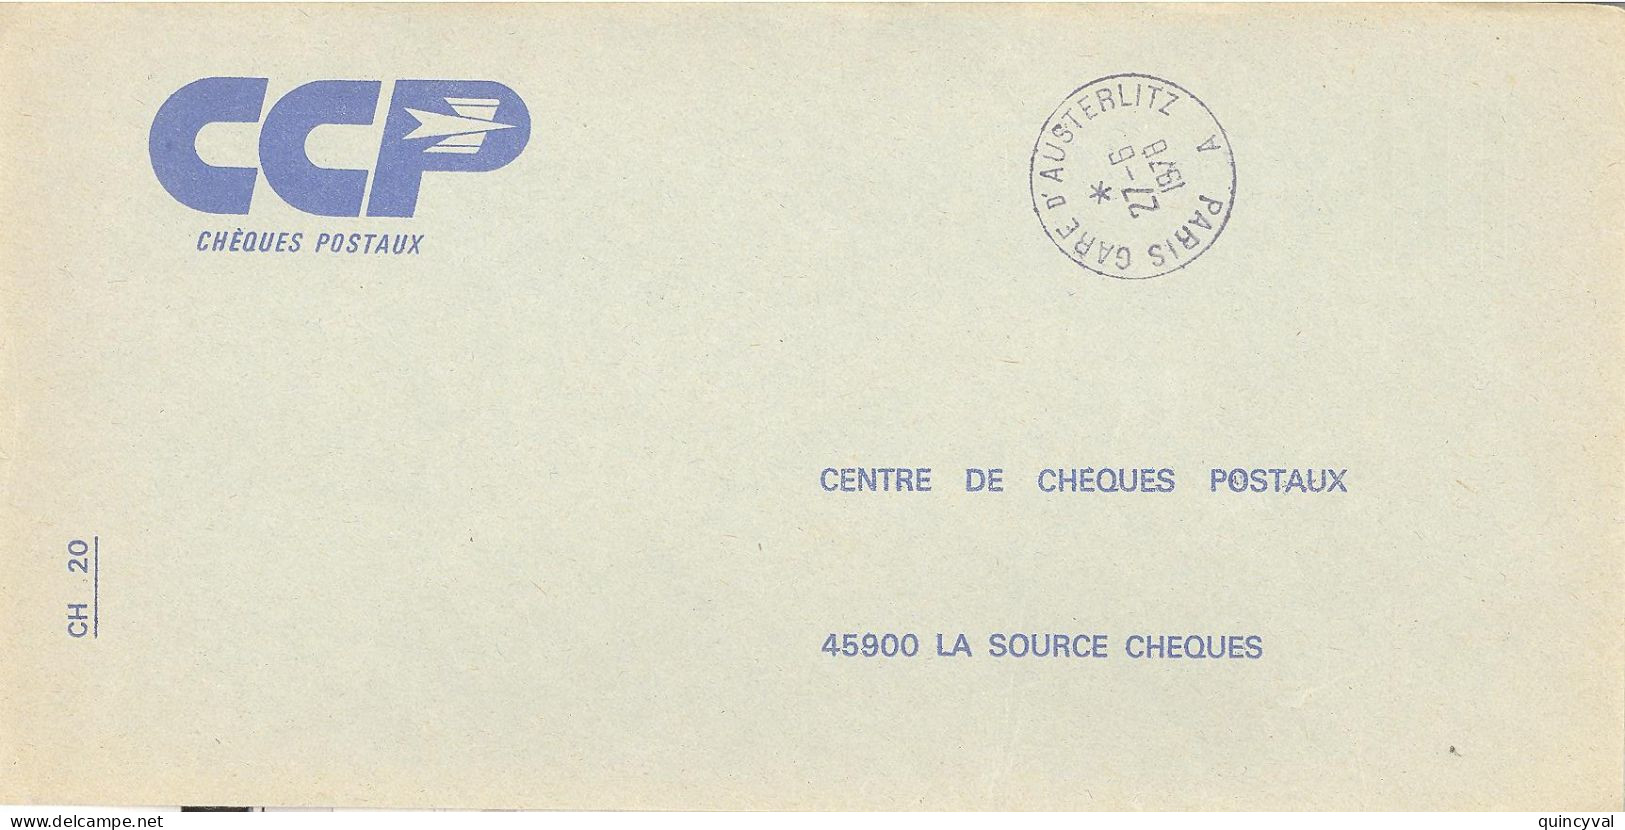 PARIS GARE D'AUSTERLITZ  A    Lettre Enveloppe Des CCP Ob 27 6 1978 - Handstempel